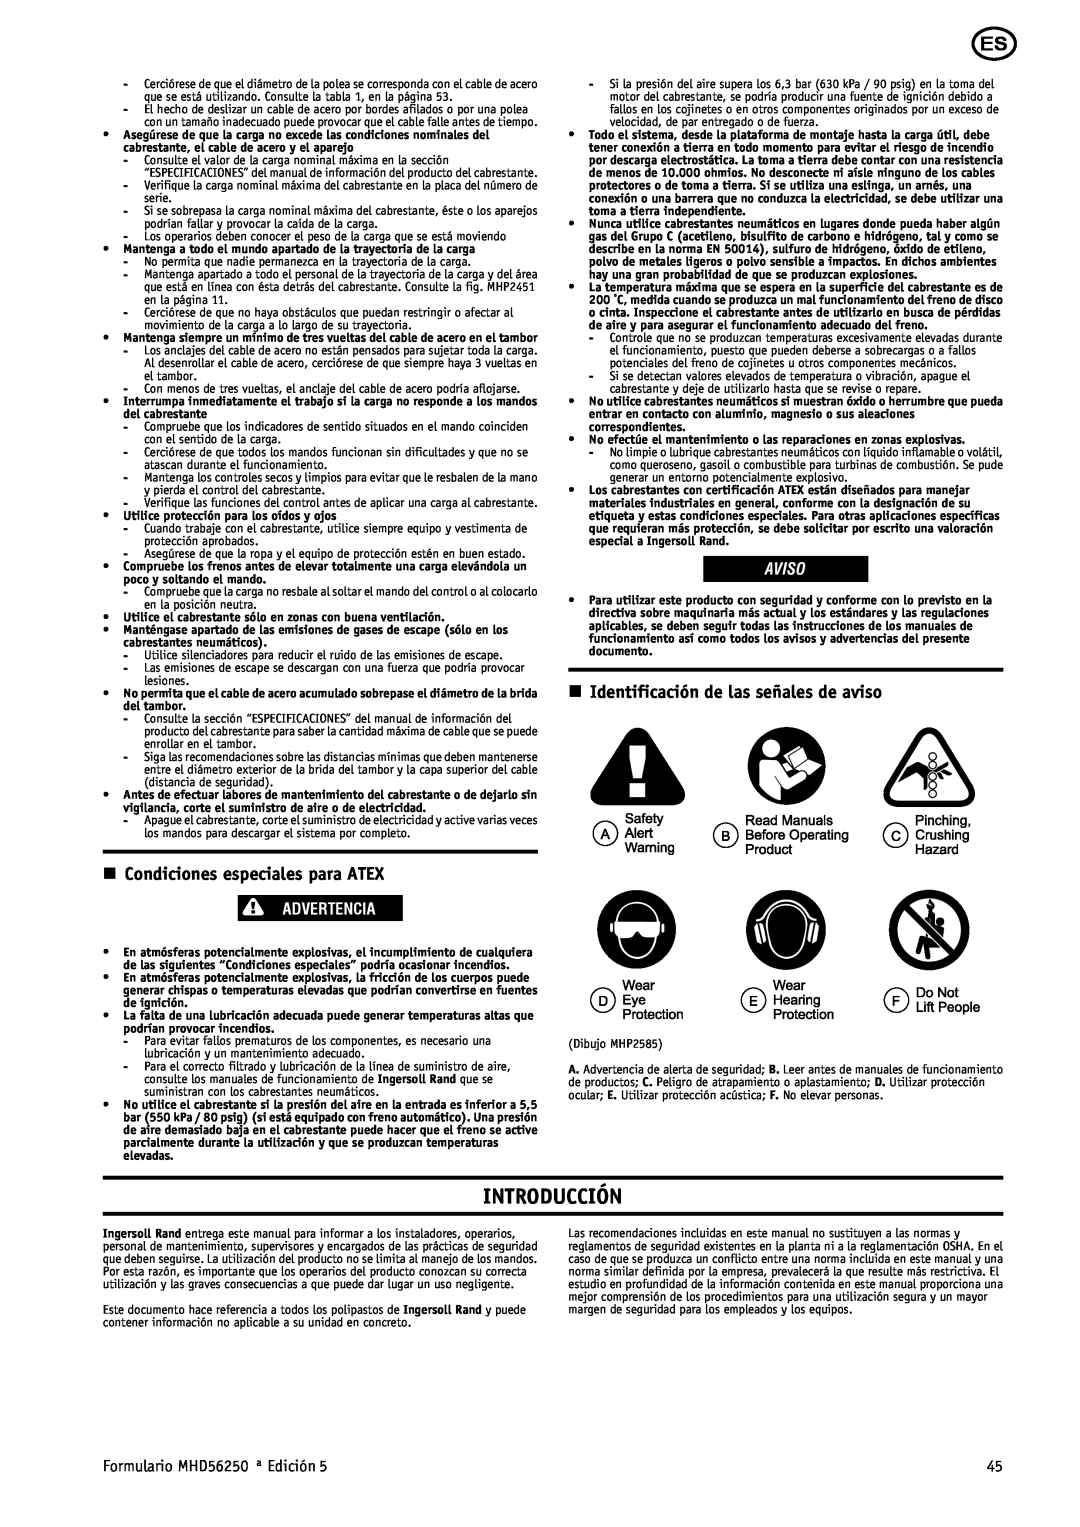 Ingersoll-Rand MHD56250 Introducción, n Identificación de las señales de aviso, n Condiciones especiales para ATEX, Aviso 